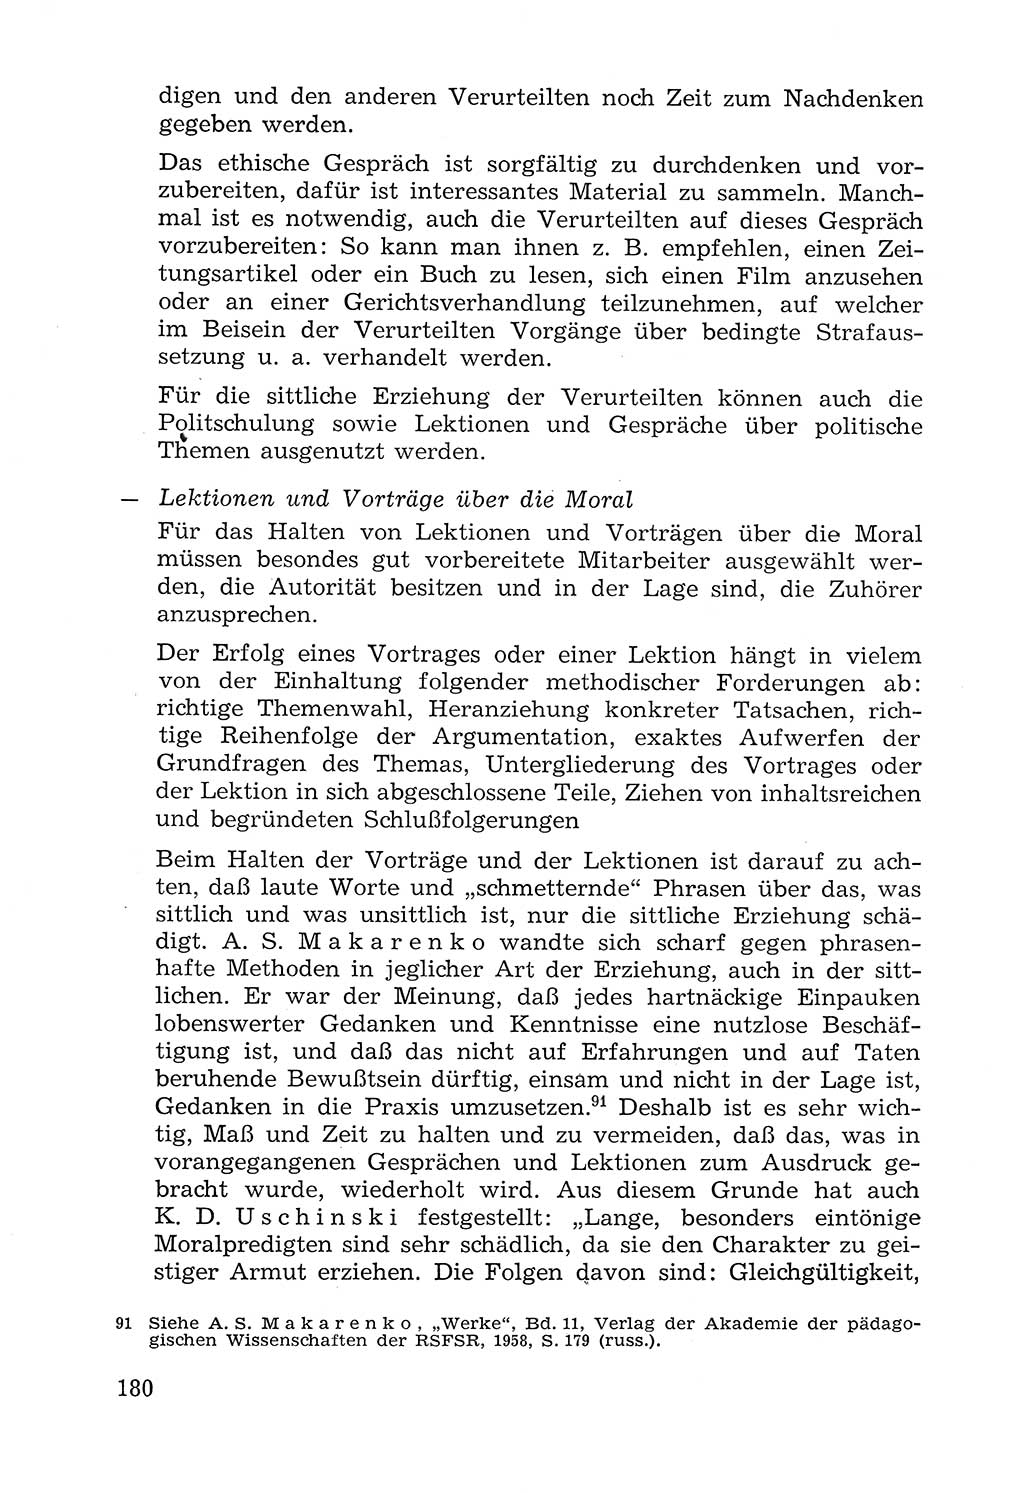 Lehrbuch der Strafvollzugspädagogik [Deutsche Demokratische Republik (DDR)] 1969, Seite 180 (Lb. SV-Pd. DDR 1969, S. 180)